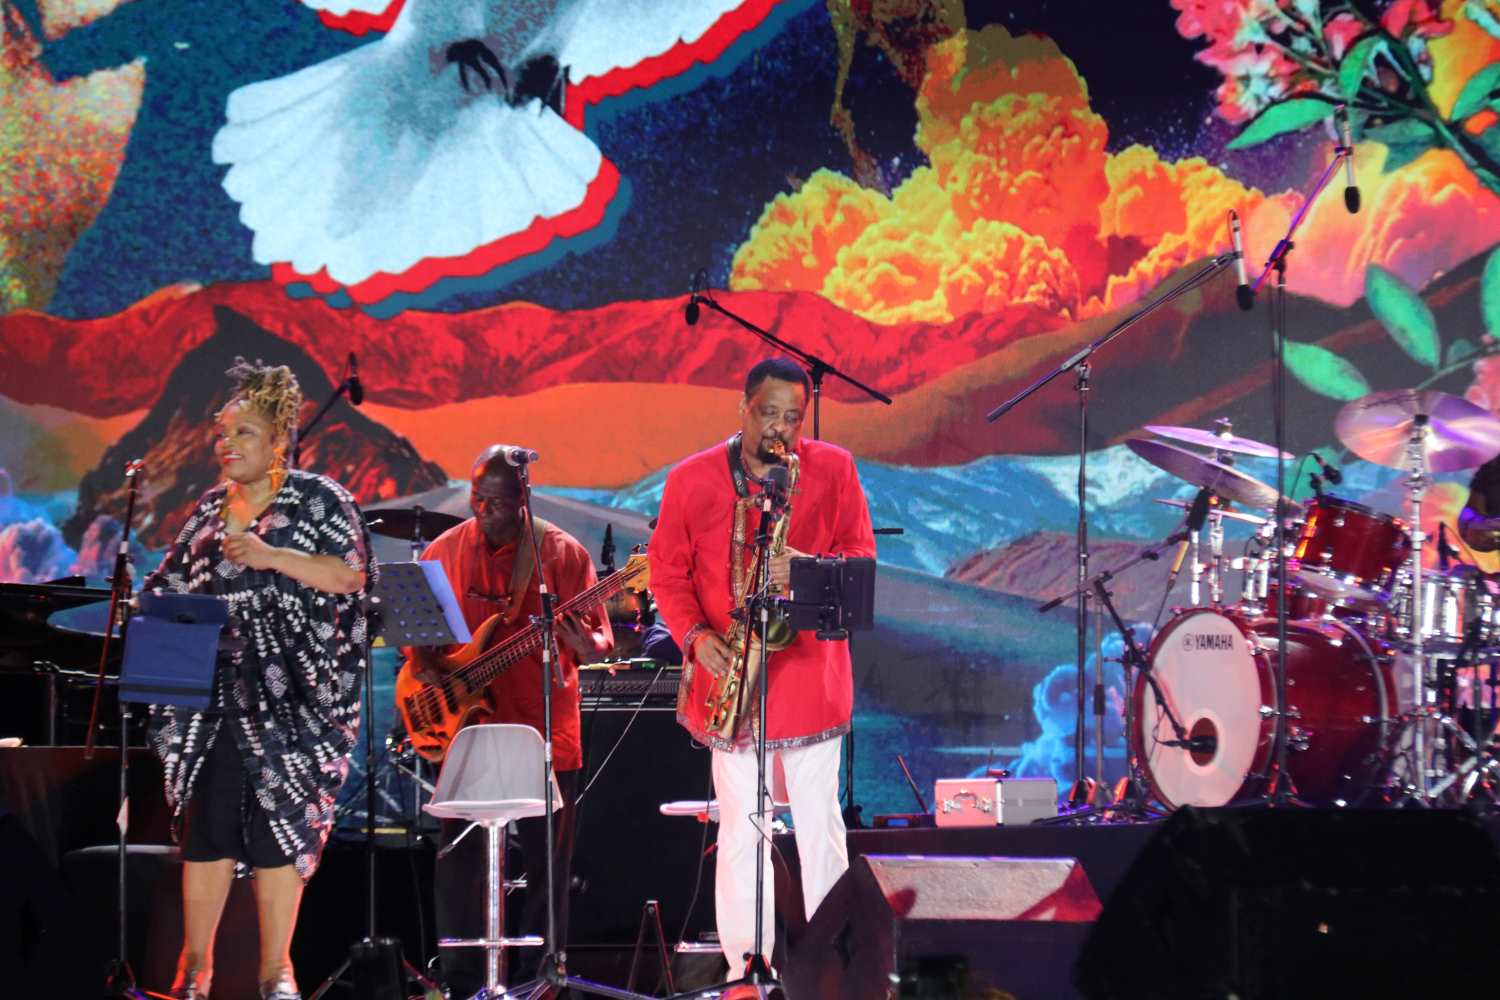 Tượng đài jazz thế giới nghệ sĩ Chico Freeman biểu diễn tại đêm khai mạc liên hoan nhạc Jazz quốc tế Nha Trang. Ảnh: Phương Linh